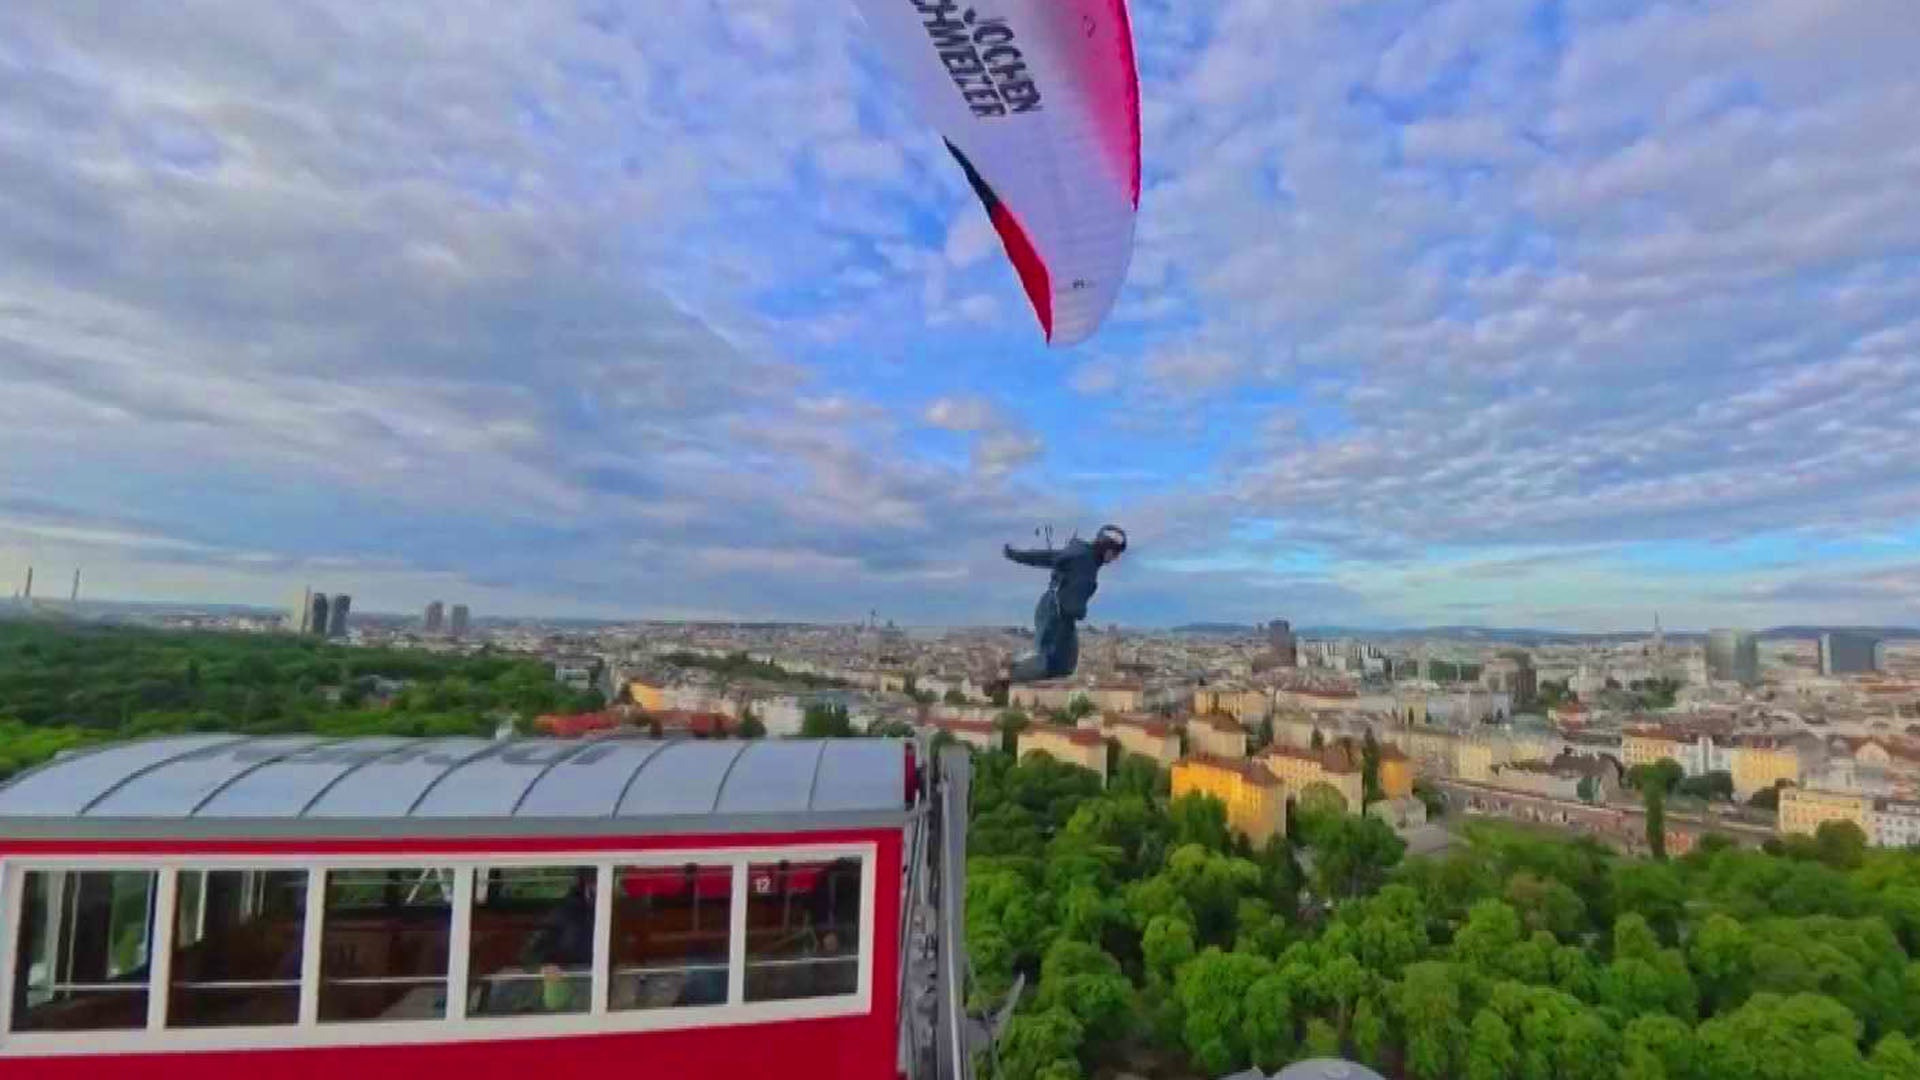 Paraglider jumping